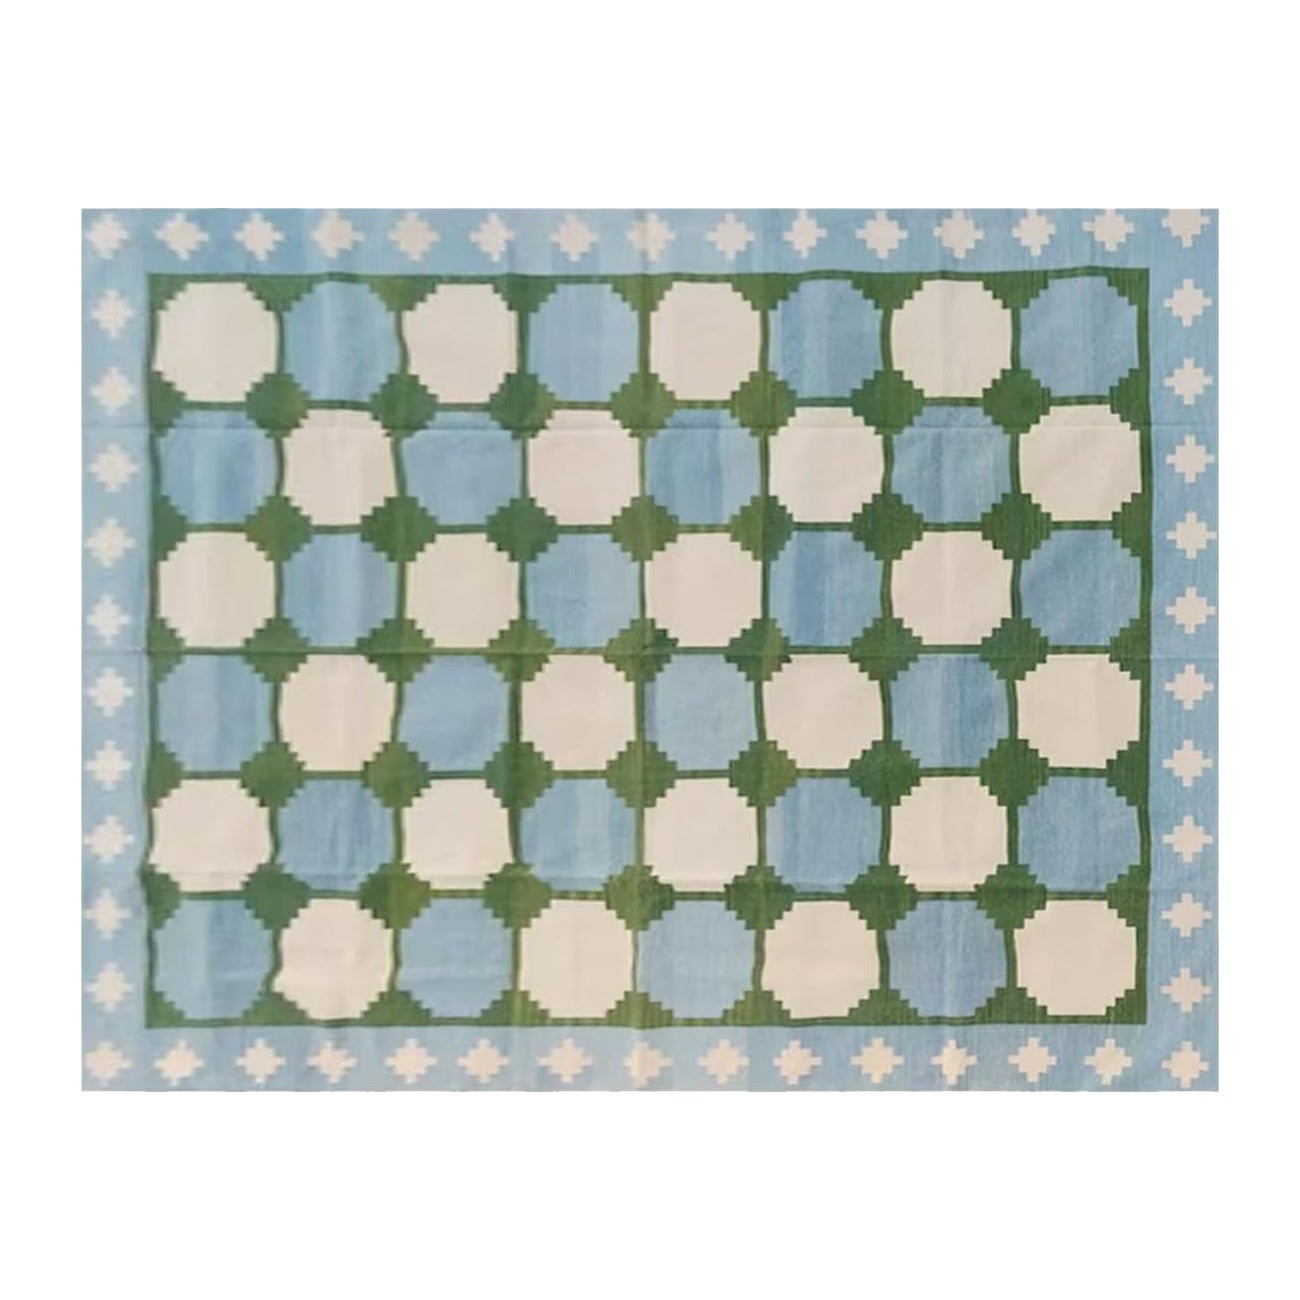 Handgefertigter Flachgewebe-Teppich aus Baumwolle, 9x12, grünes und blaues Kachelmuster, indisch Dhurrie